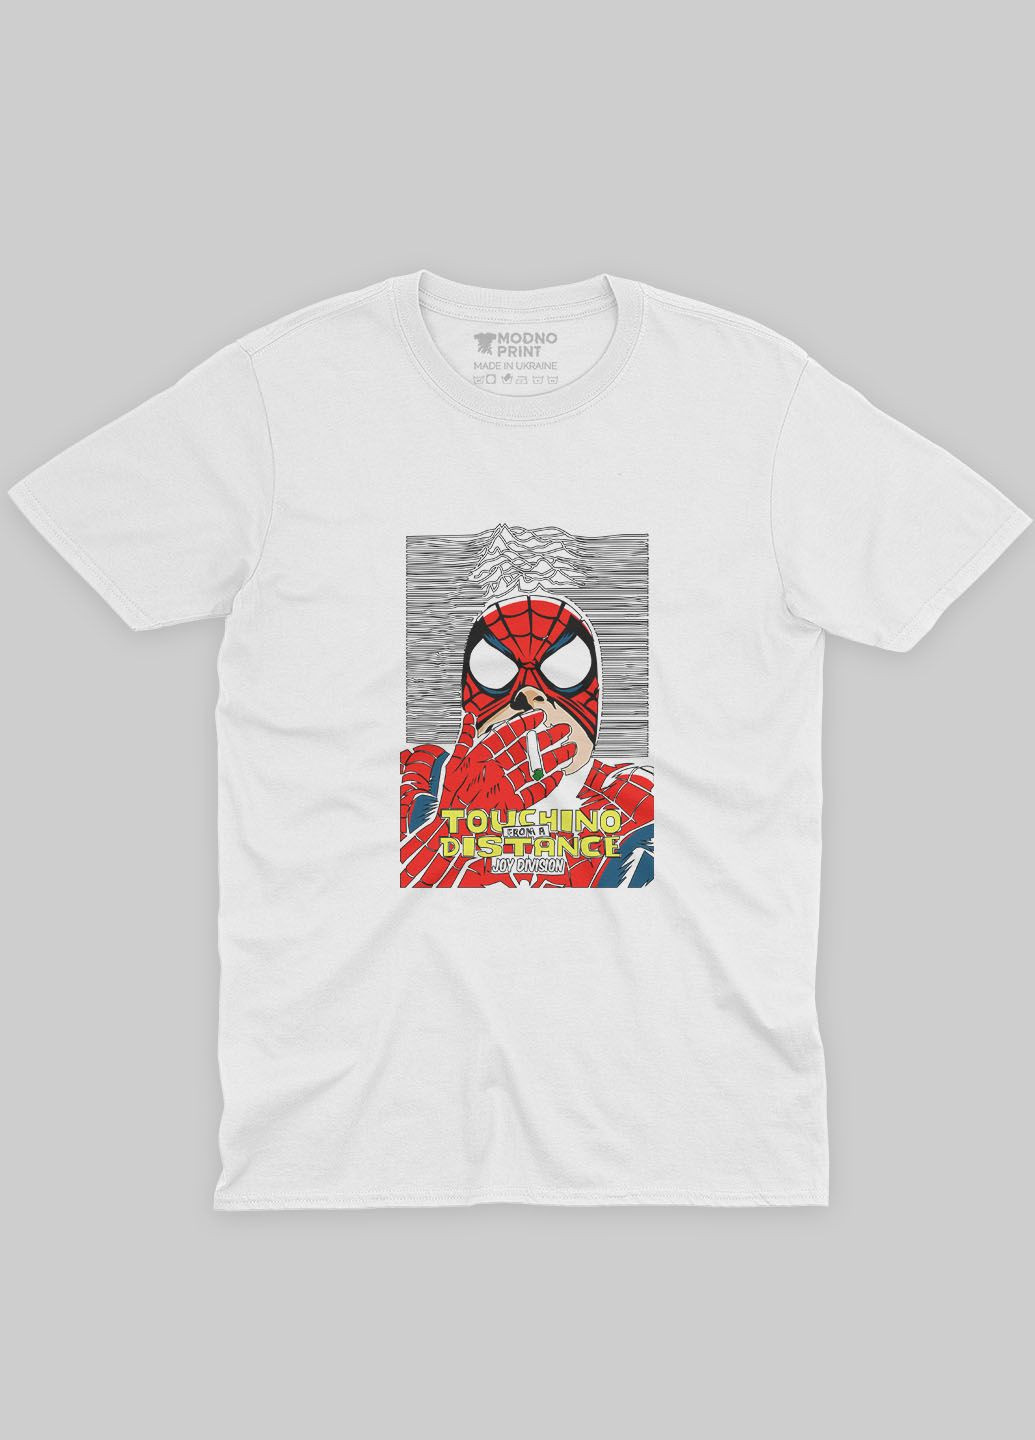 Белая демисезонная футболка для девочки с принтом супергероя - человек-паук (ts001-1-whi-006-014-045-g) Modno